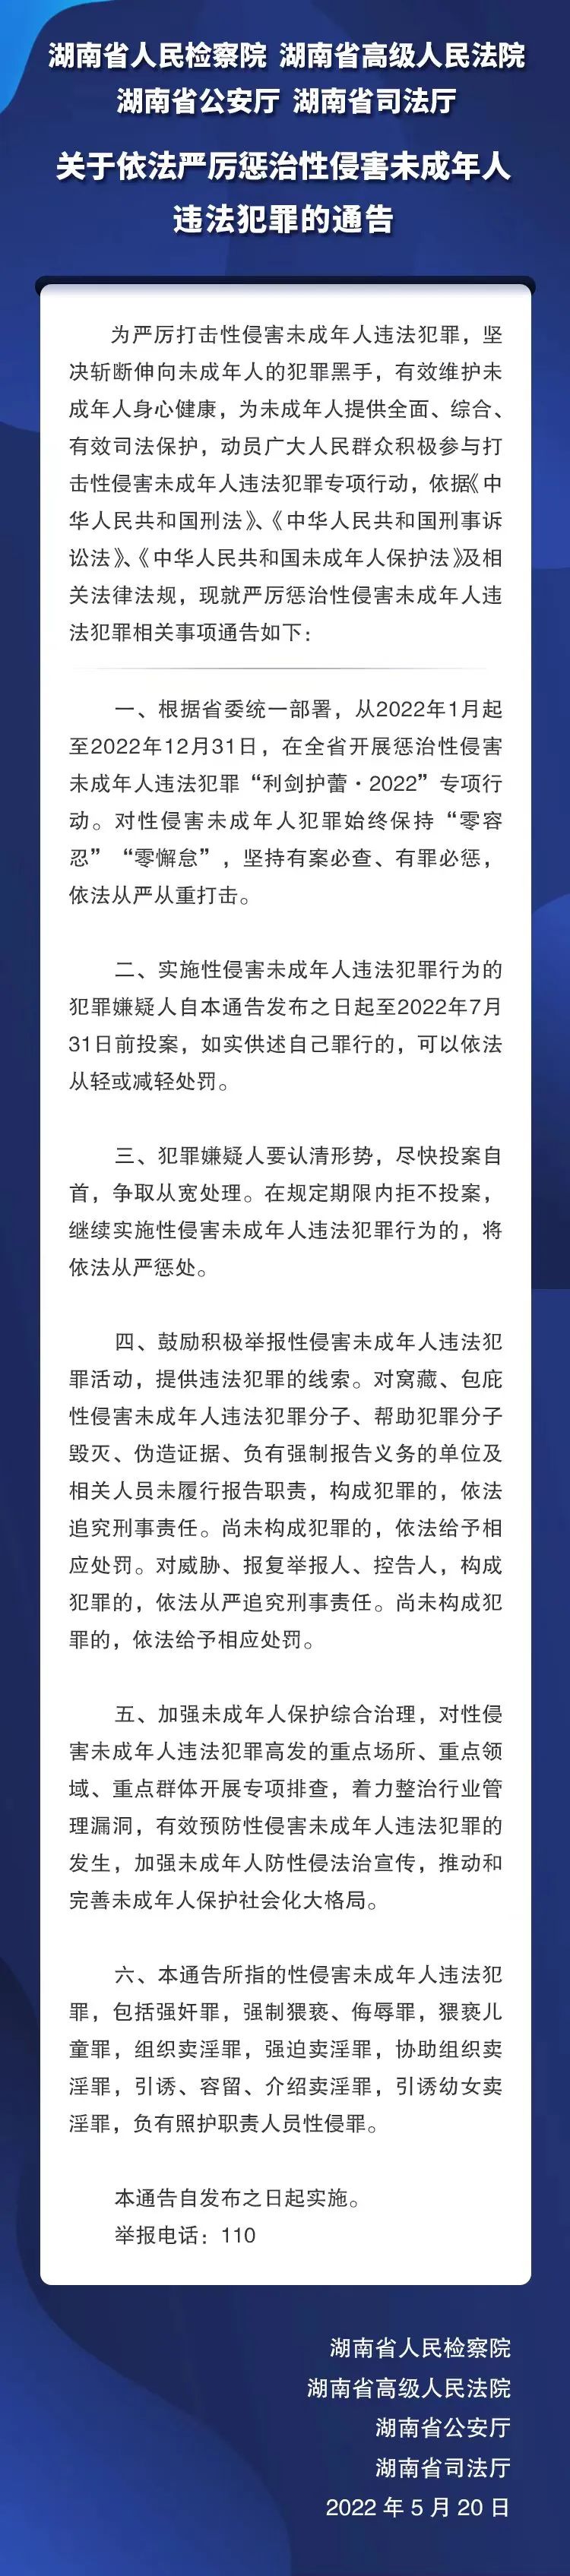 湖南4部门关于依法严厉惩治性侵害未成年人违法犯罪的通告